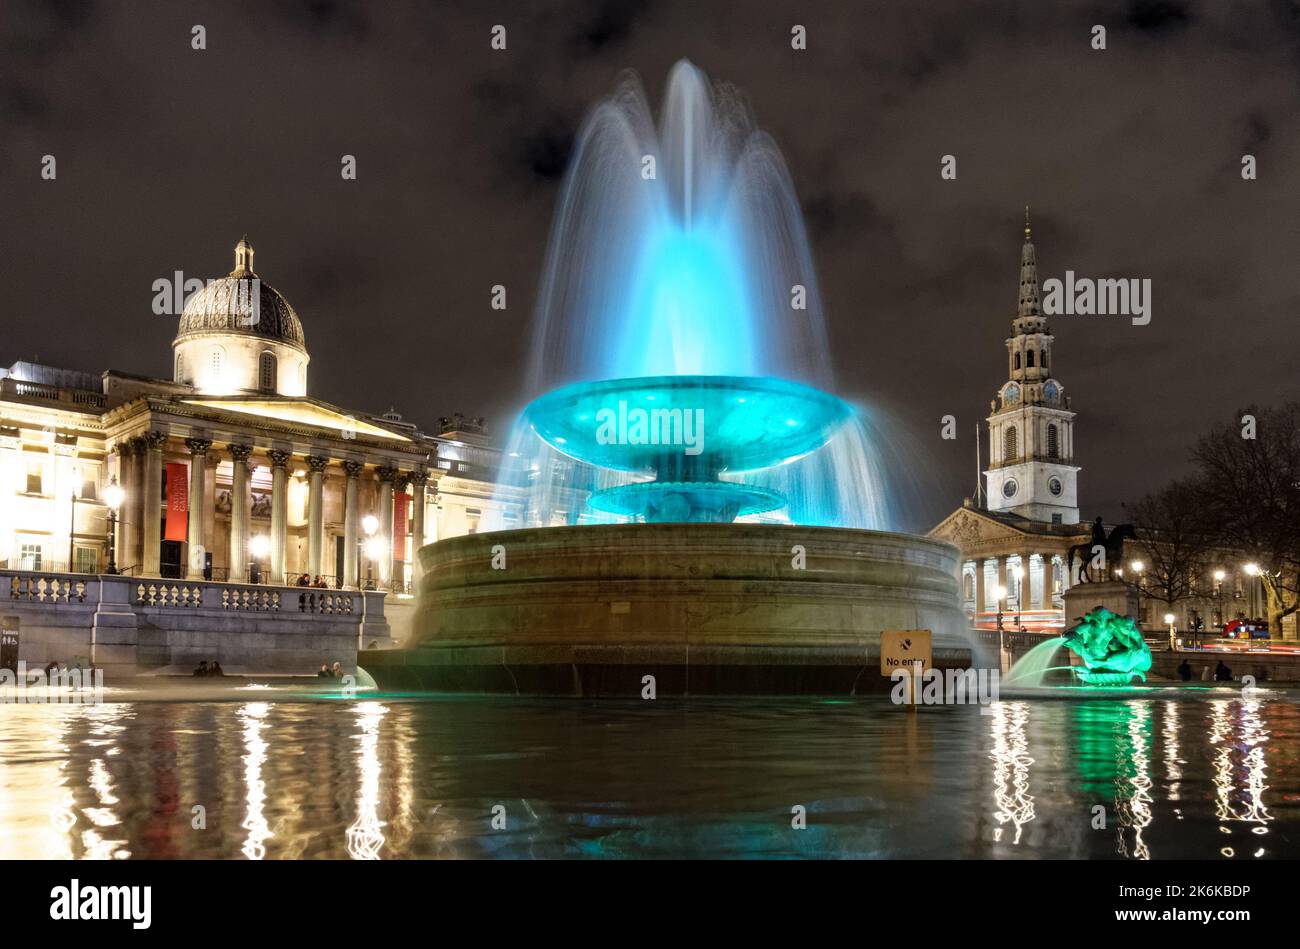 Fontana illuminata a Trafalgar Square di notte, Londra Inghilterra Regno Unito Regno Unito Foto Stock